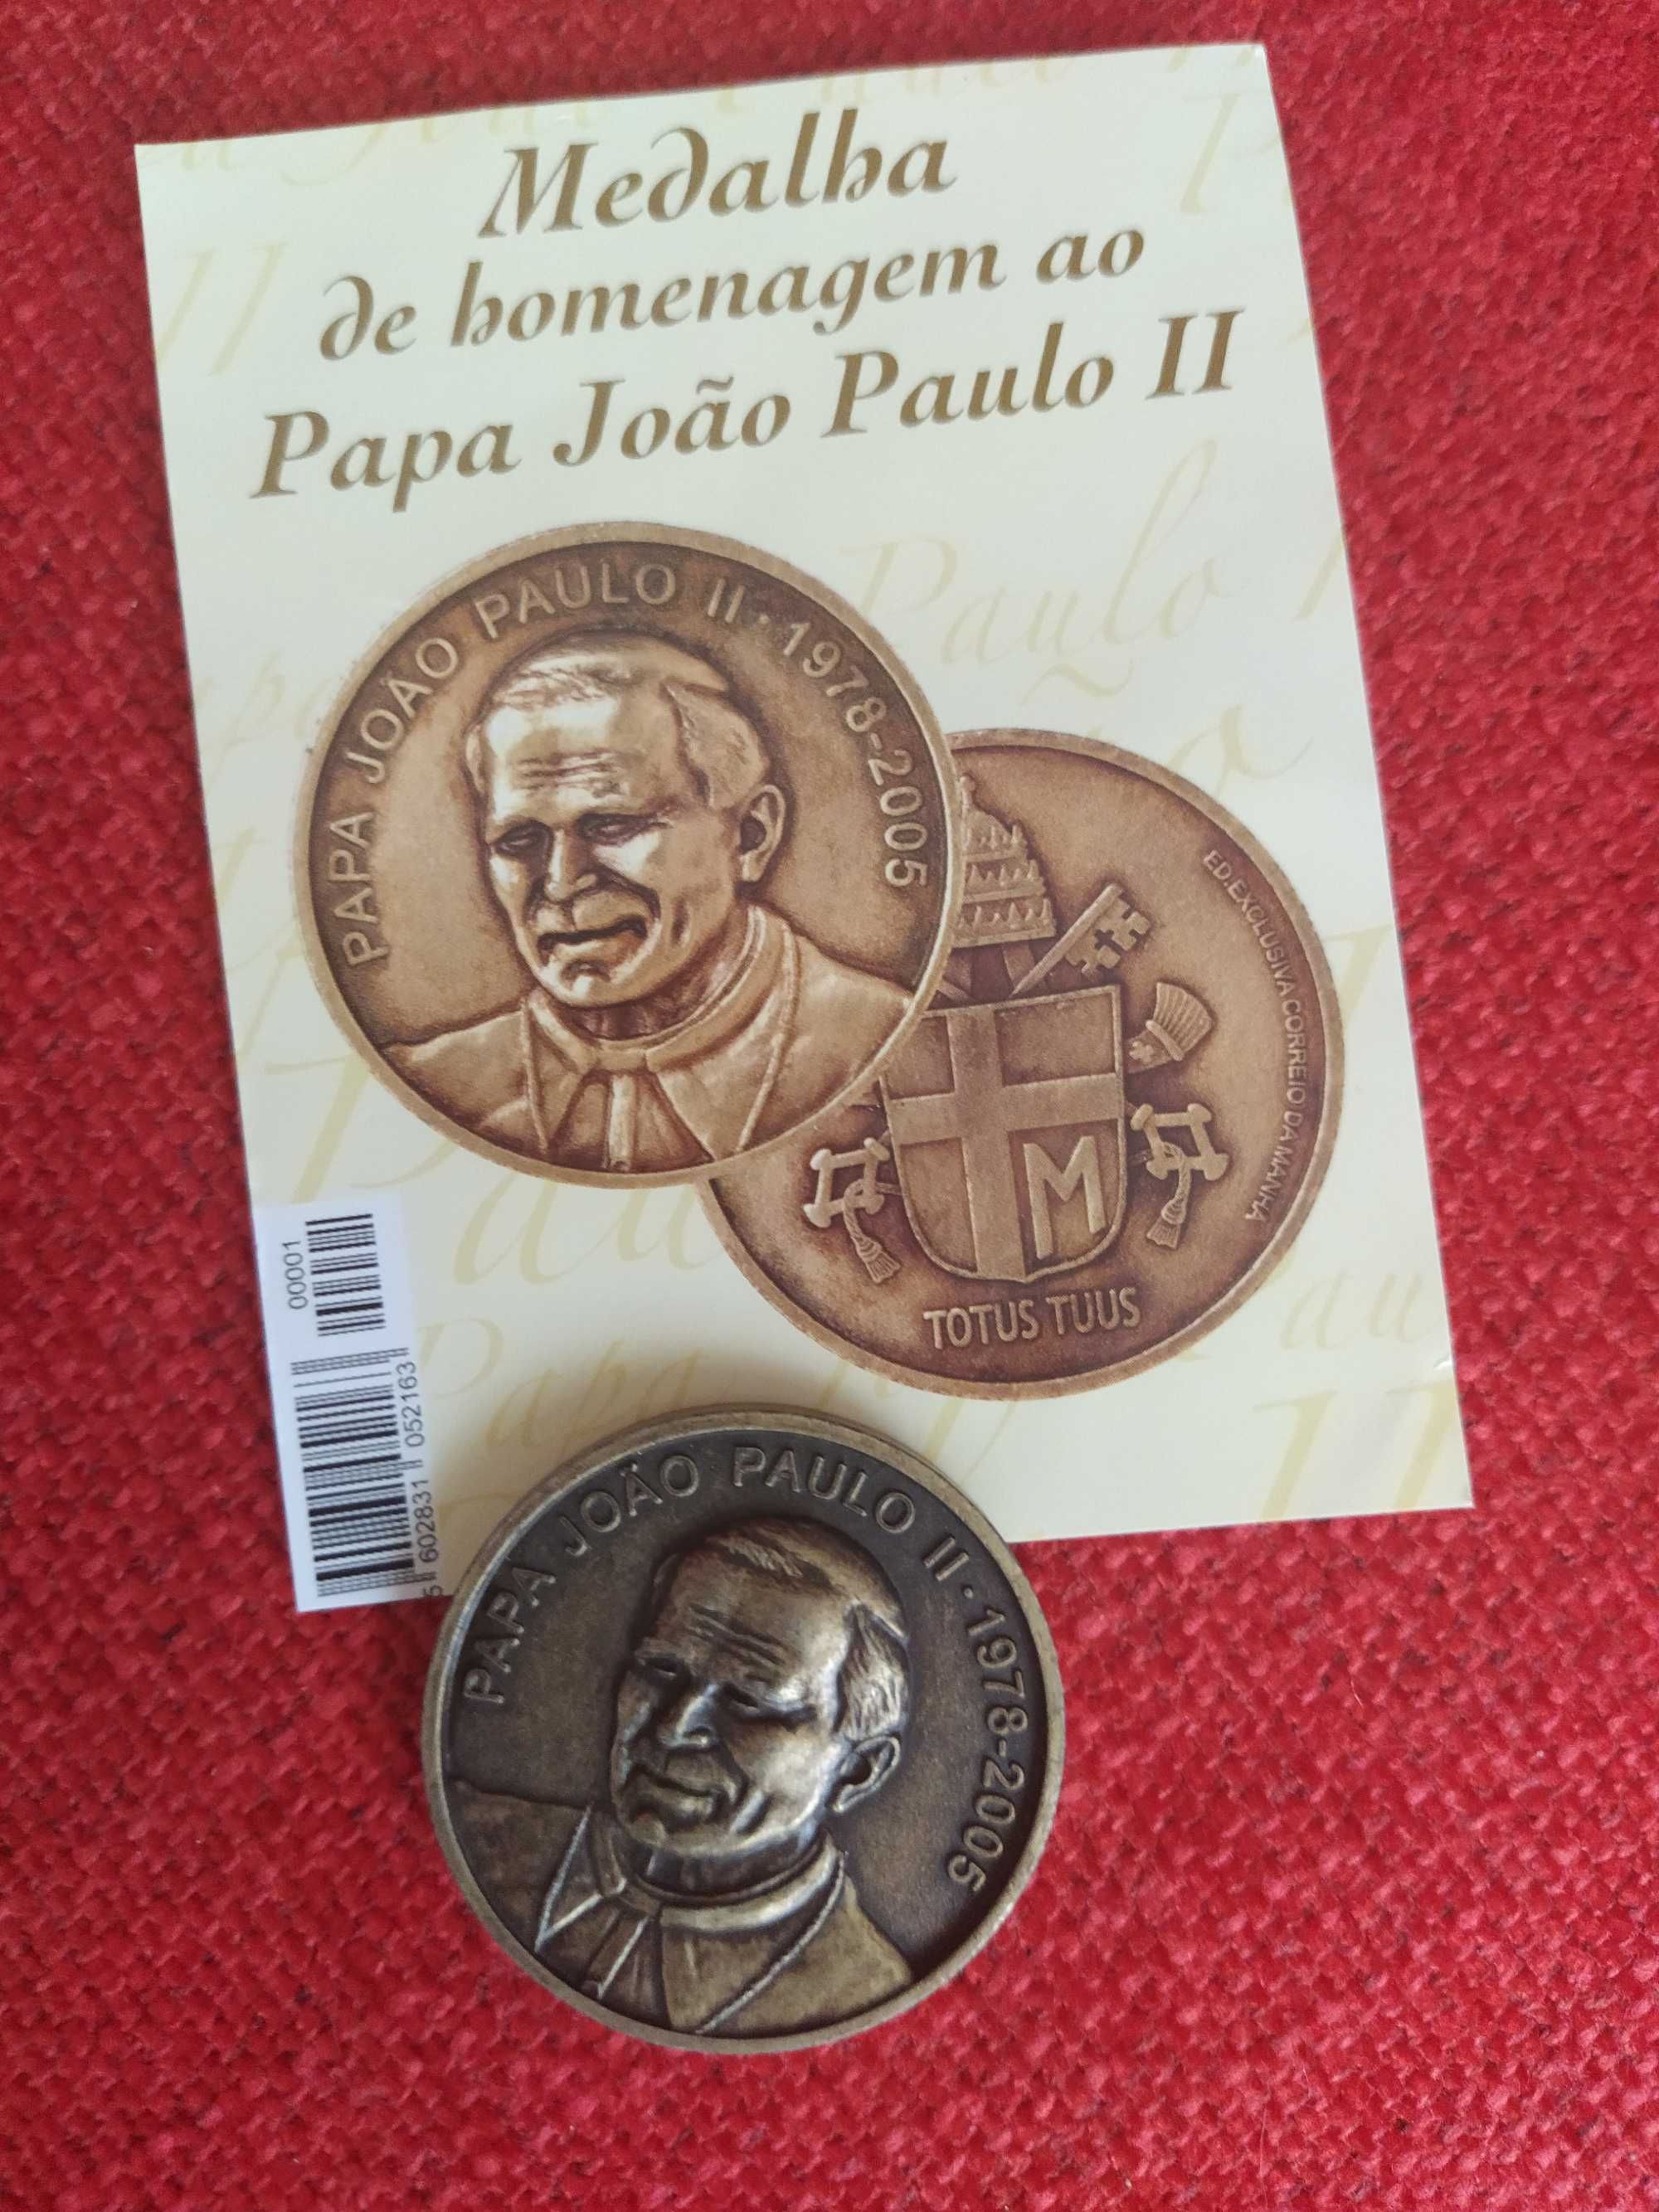 Medalha de Homenagem Papa João Paulo II